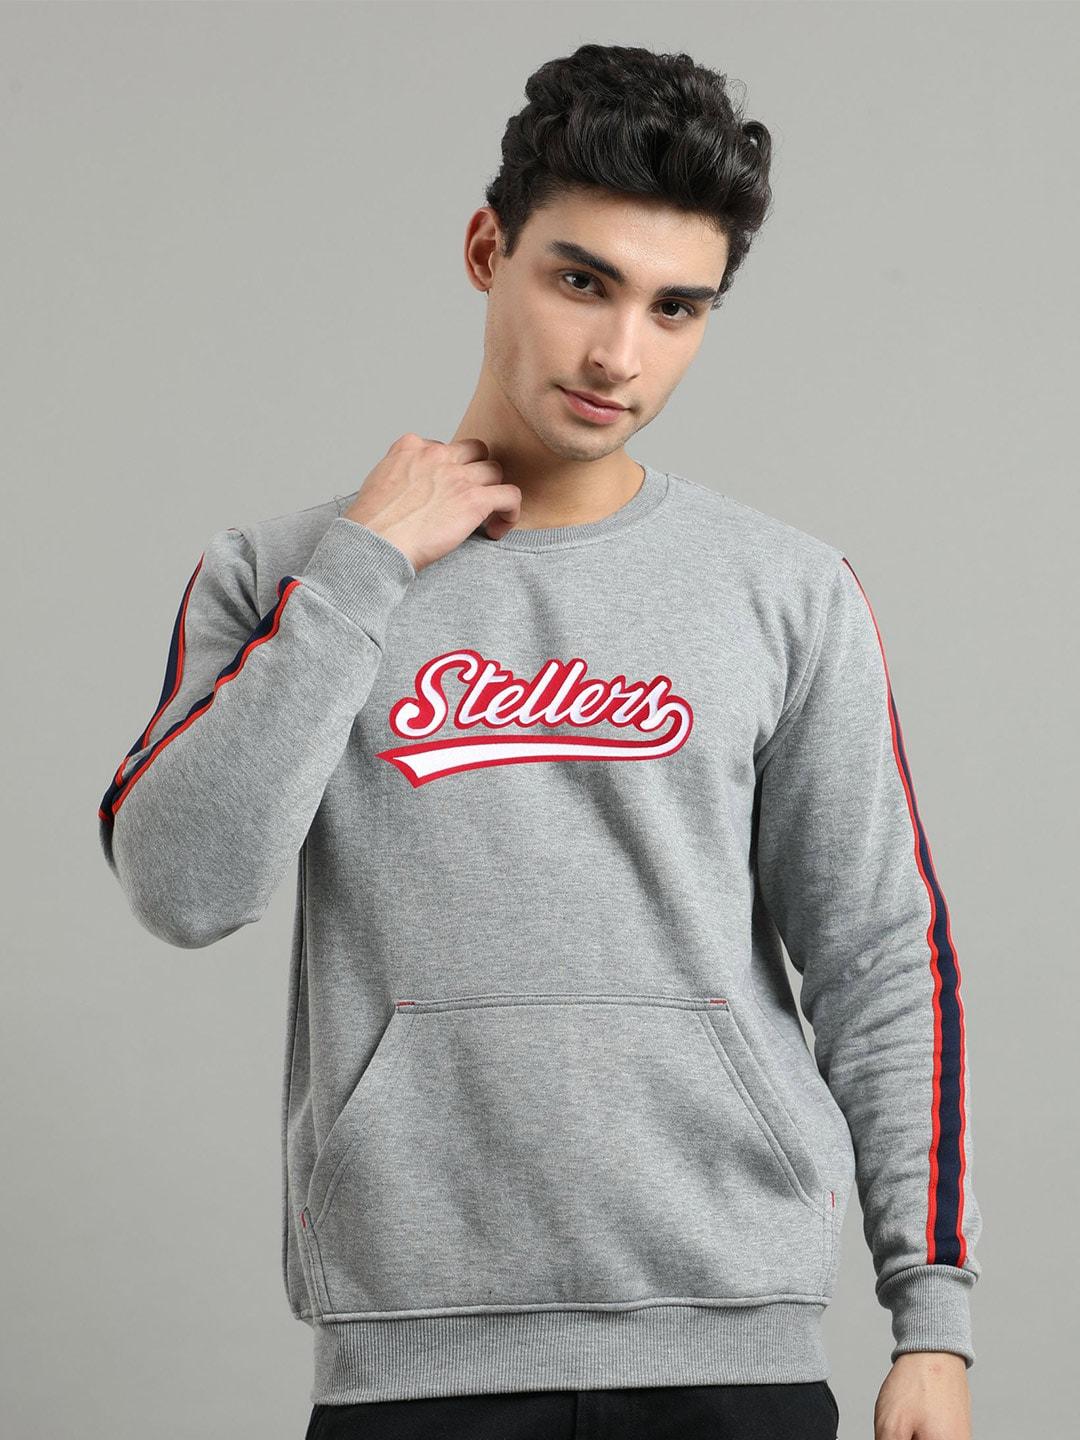 stellers-typography-printed-sweatshirt